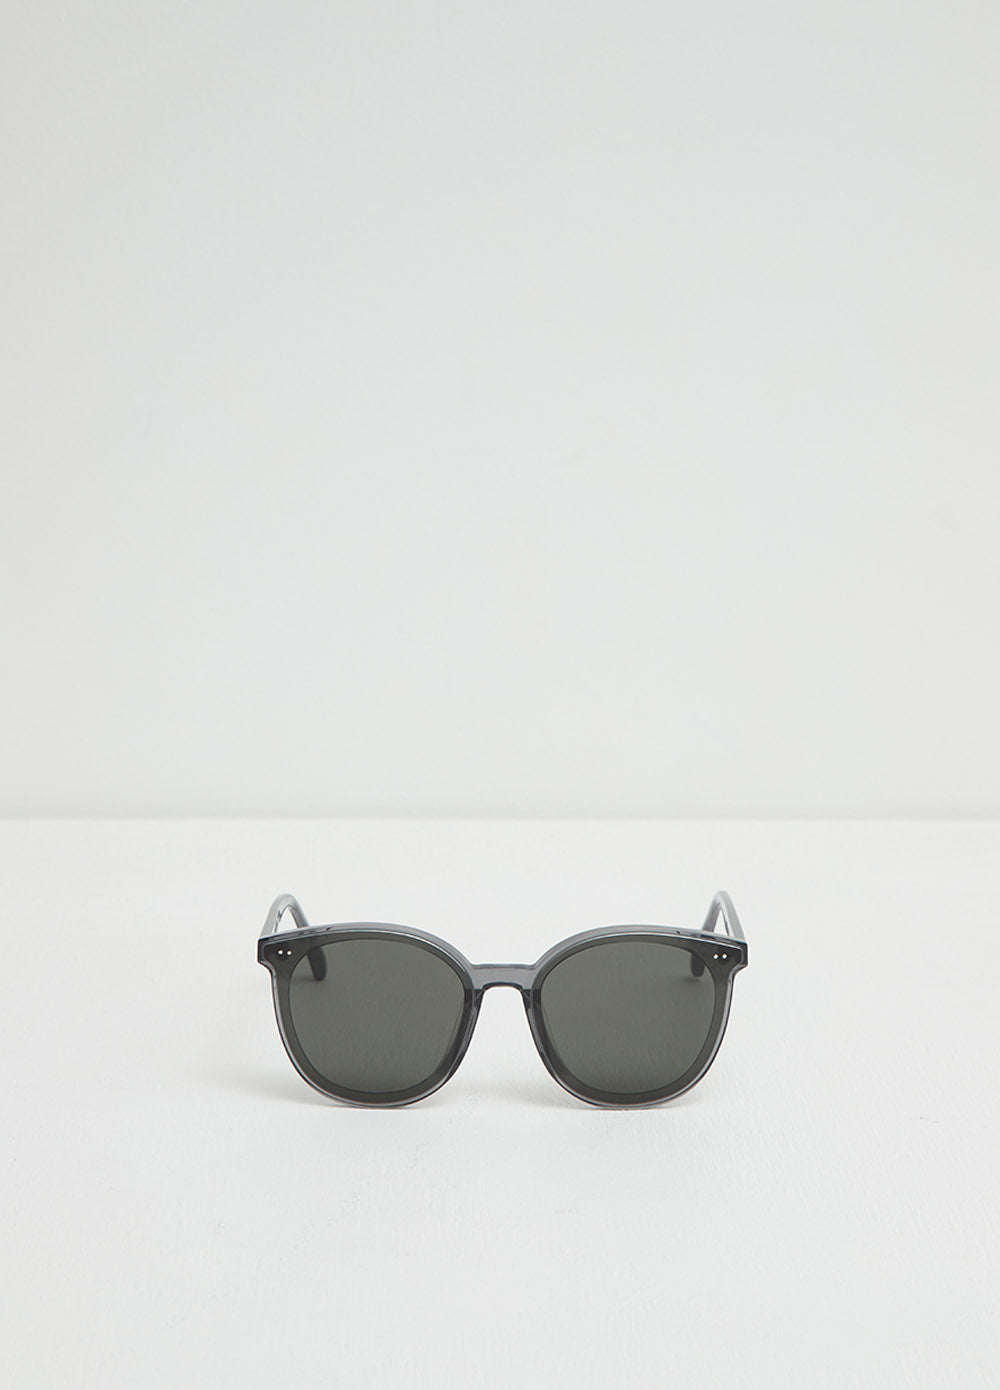 Solo G1 Sunglasses